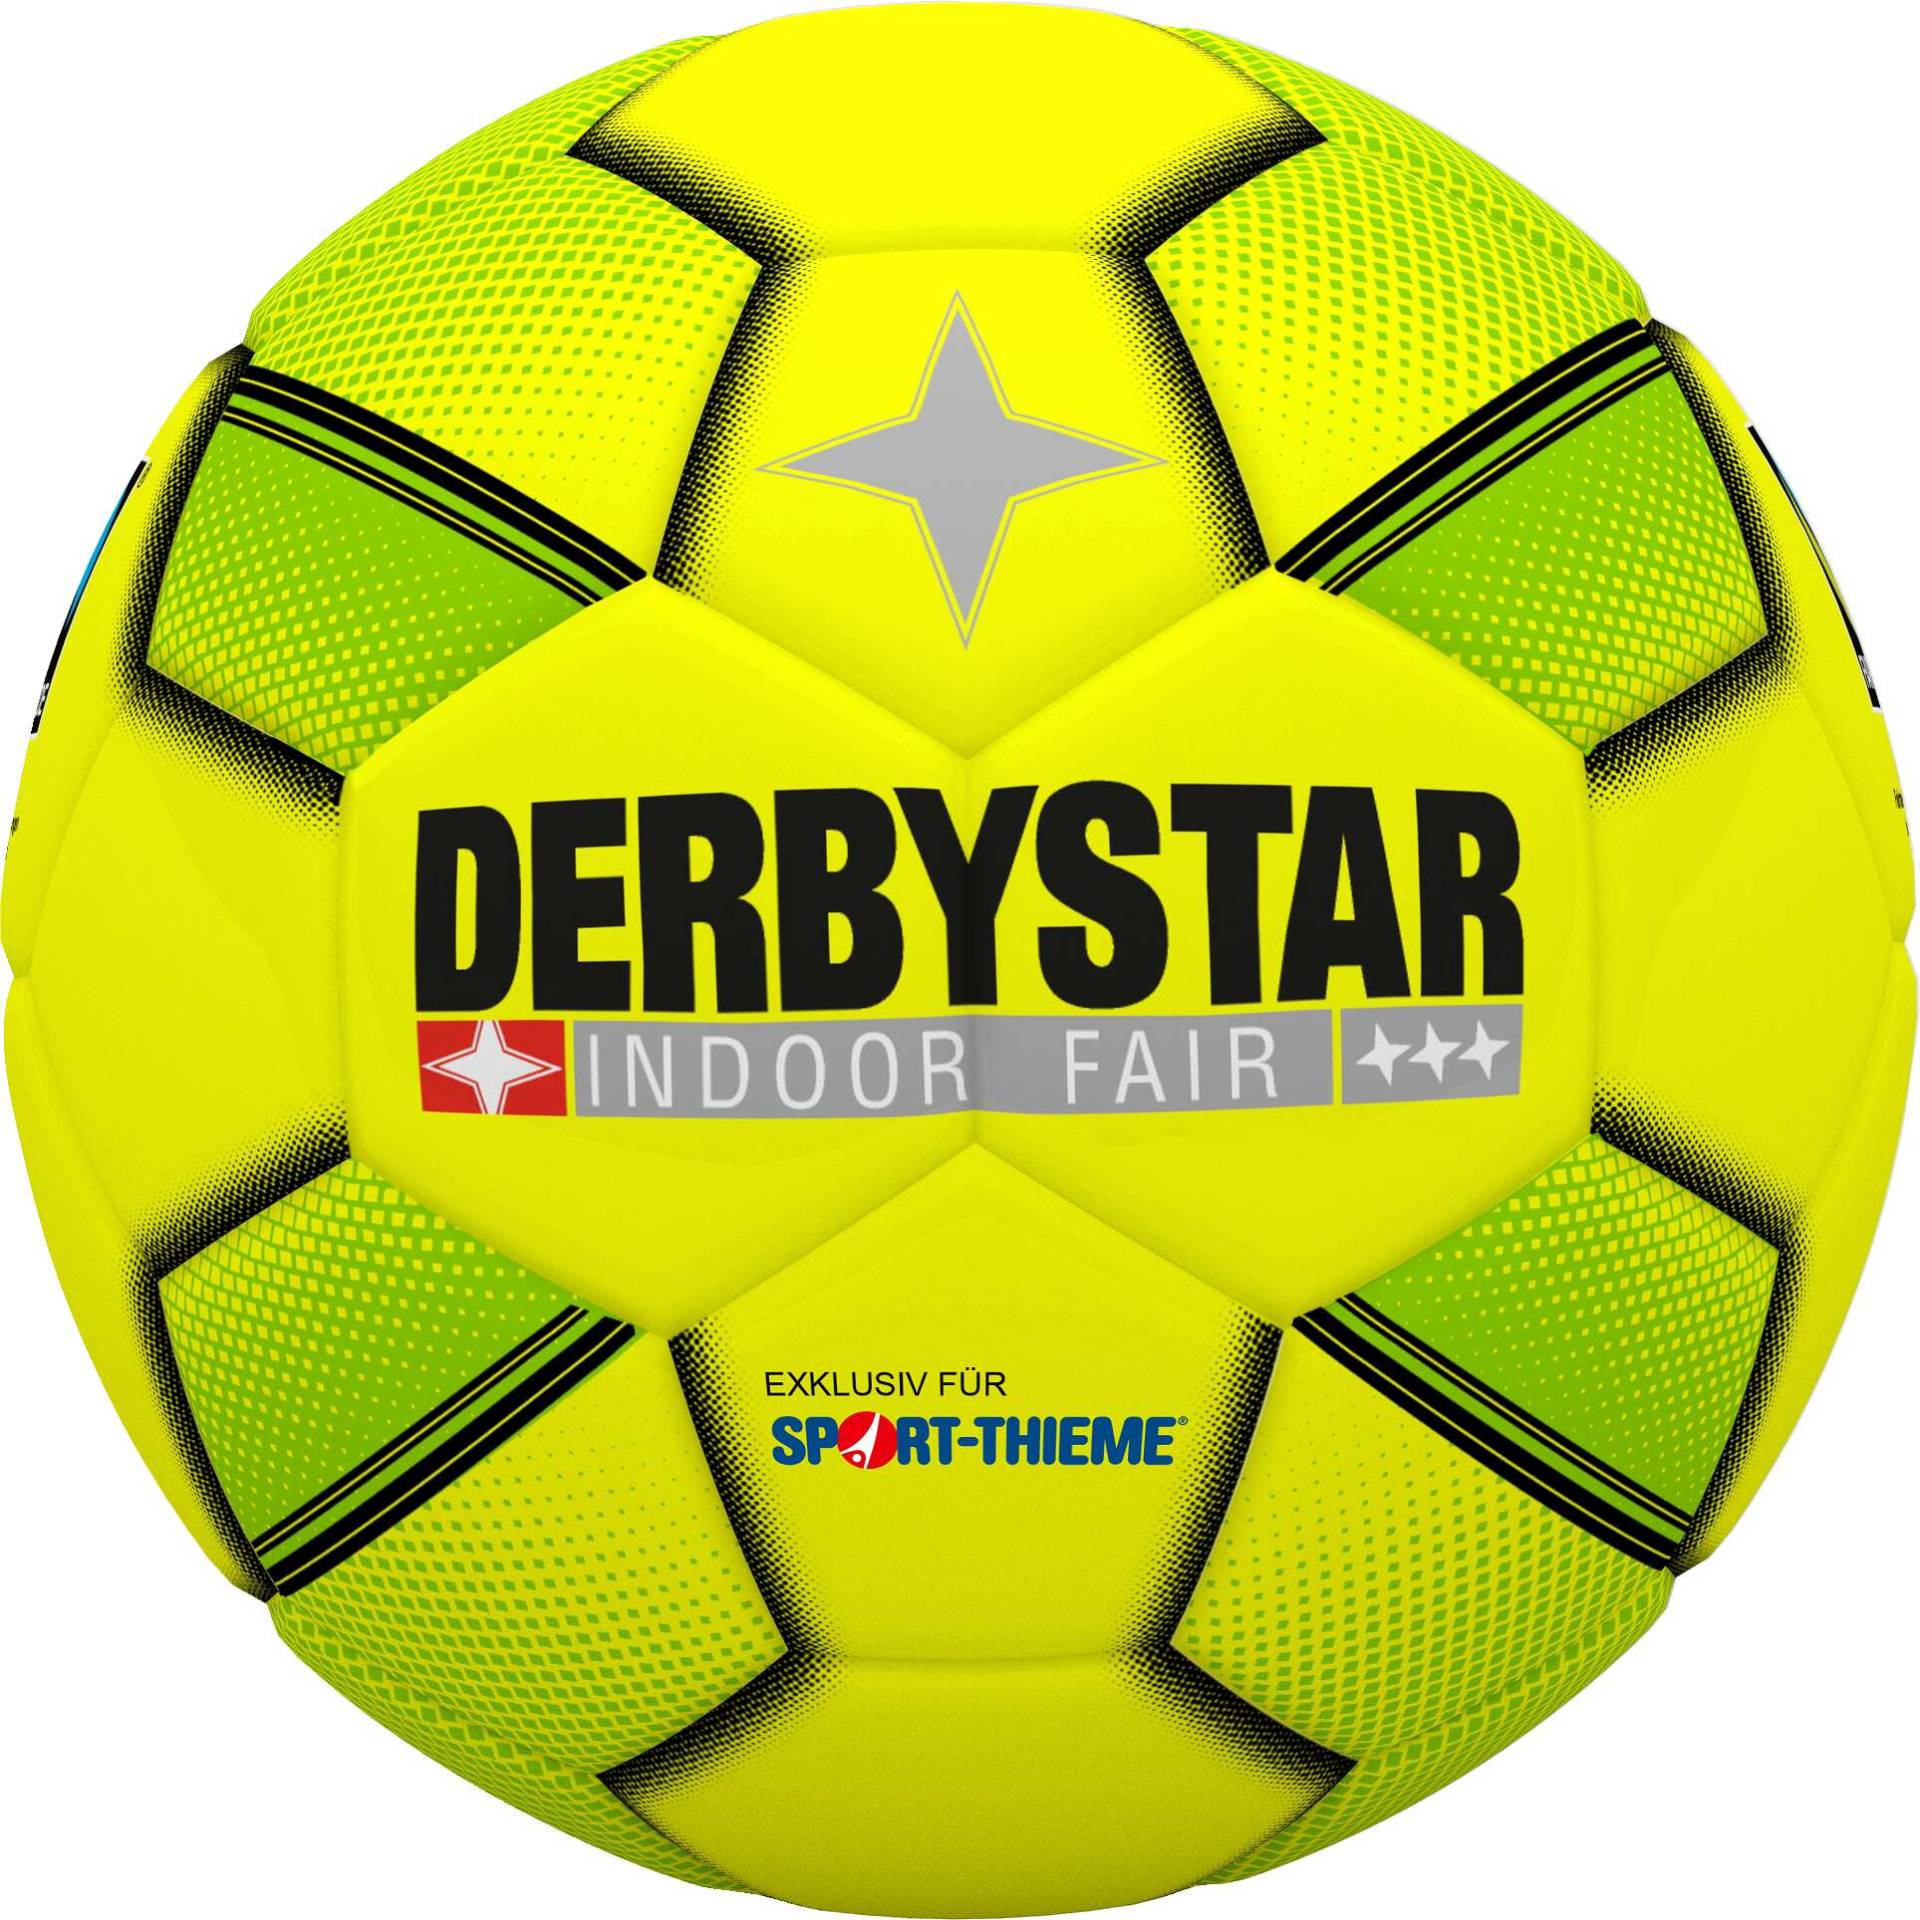 Derbystar Hallenfußball Fairtrade "Indoor Fair" von Derbystar